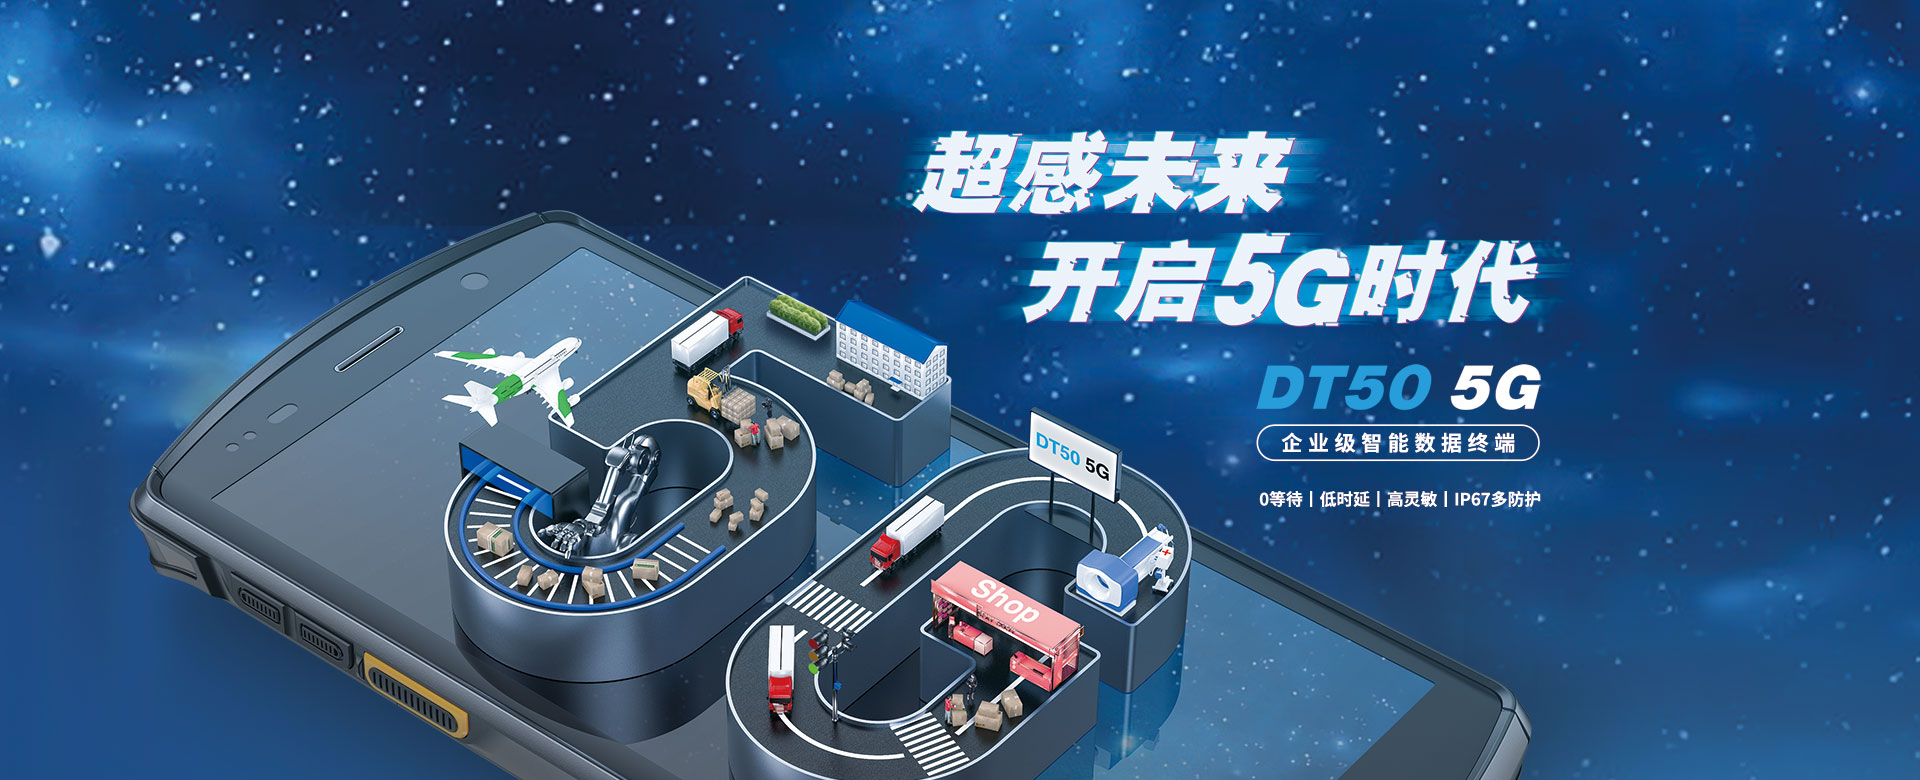 DT50 5G